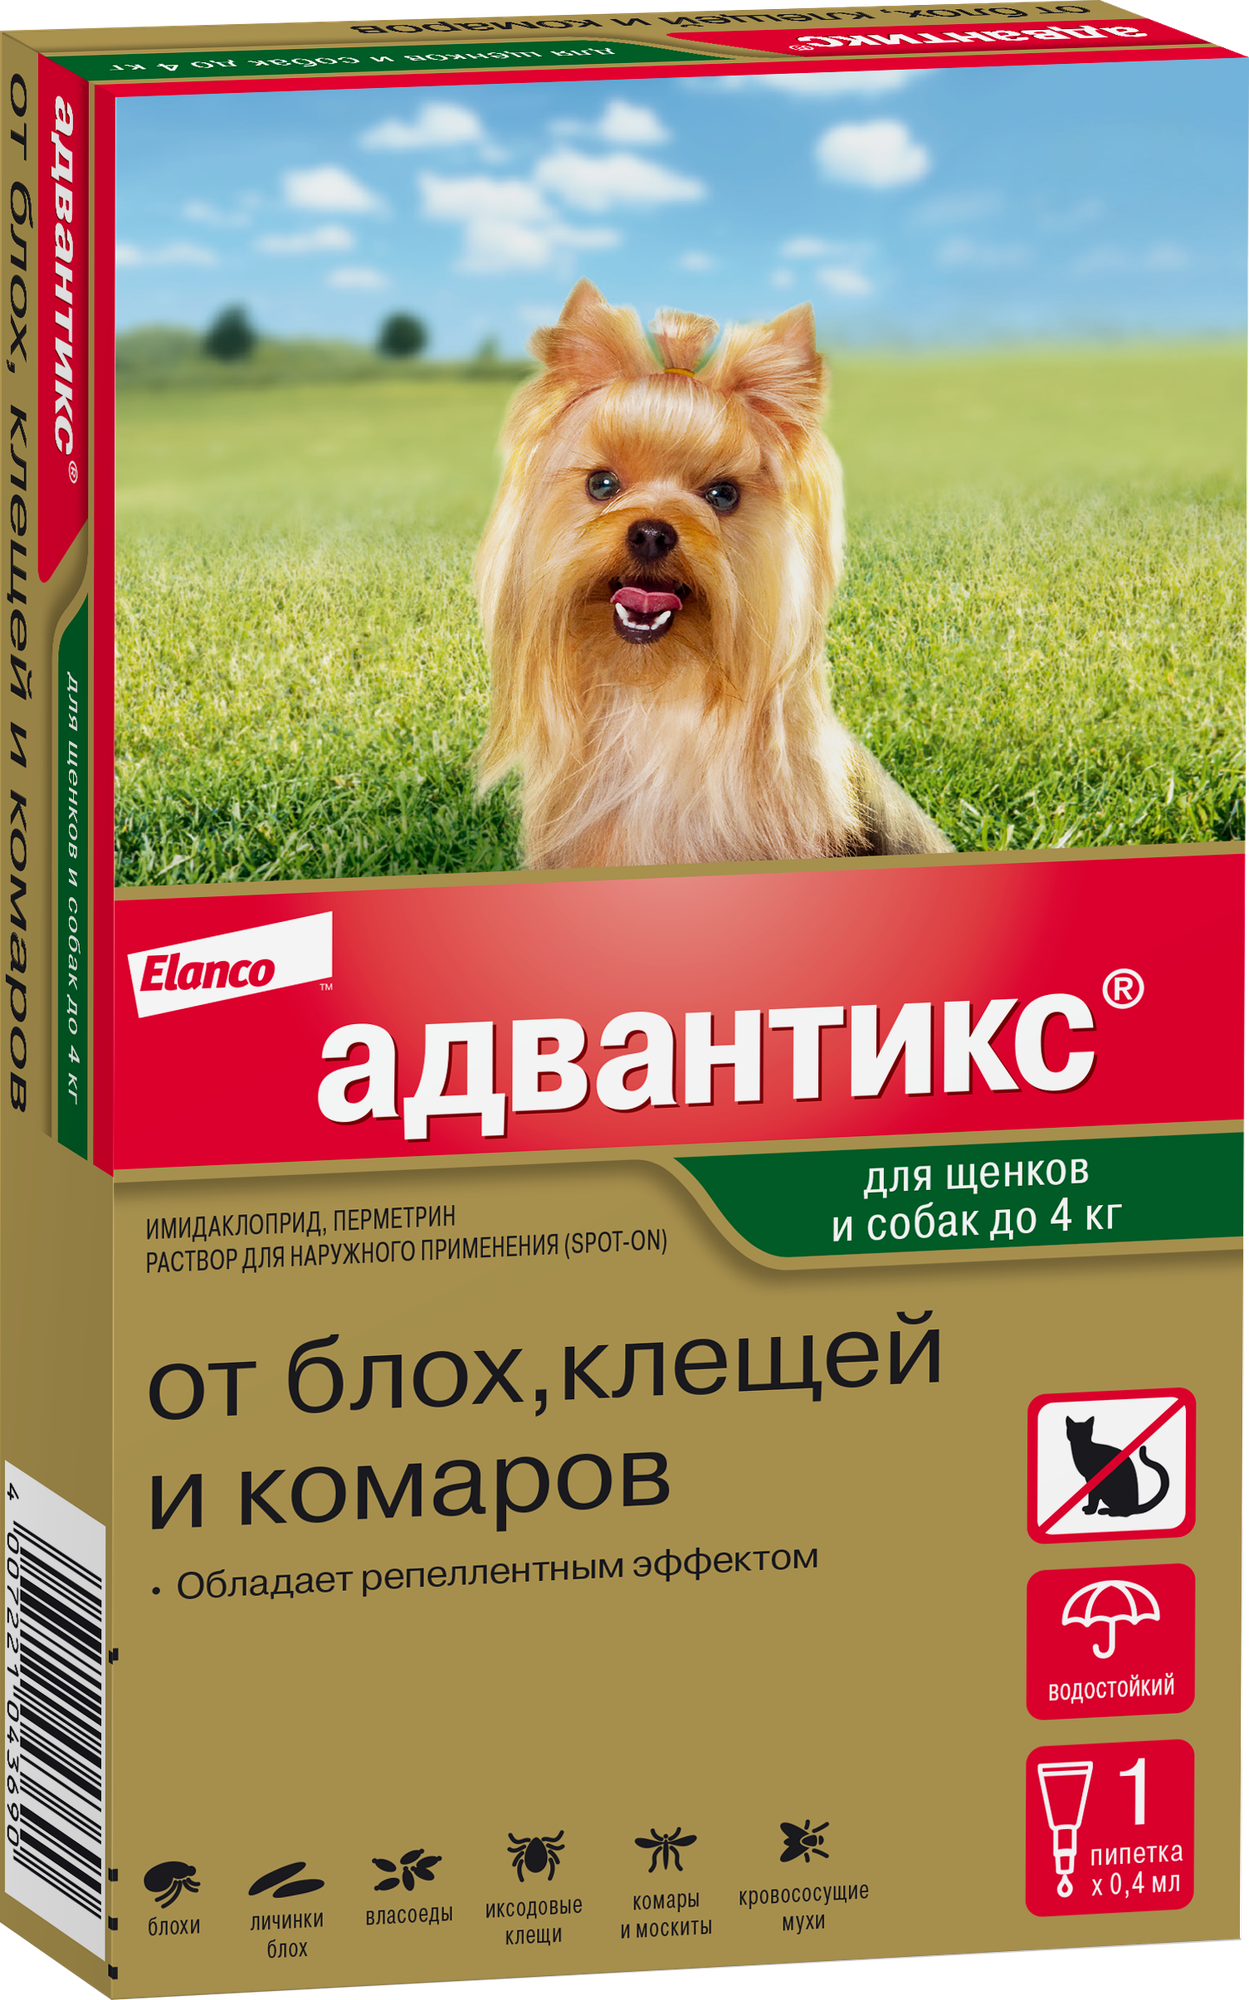 Адвантикс (Elanco) для собак весом до 4 кг для защиты от блох, иксодовых клещей, летающих насекомых и переносимых ими заболеваний. 1 пипетка в упаковке.